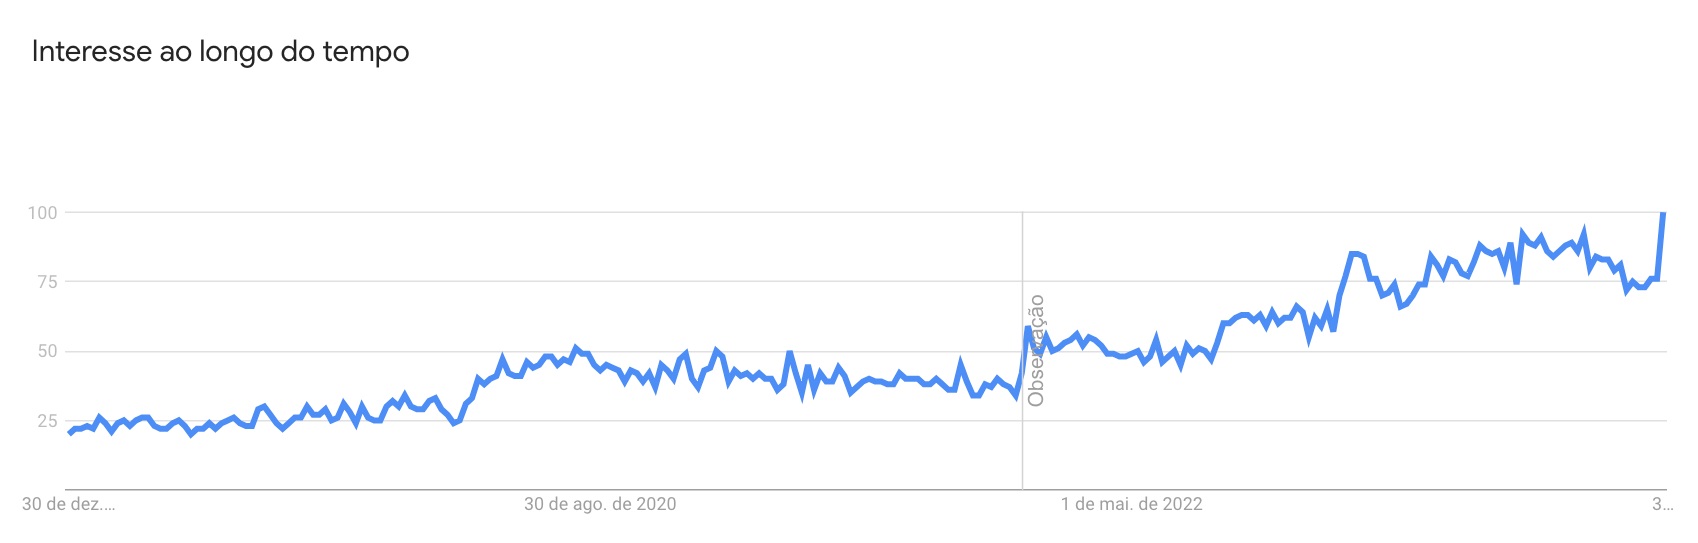 Gráfico do Google Trends que mostra o interesse nas buscas globais para o termo "Print on Demand" nos últimos 5 anos. O gráfico mostra uma tendência de alta com o interesse máximo pelo assunto no começo de 2024.